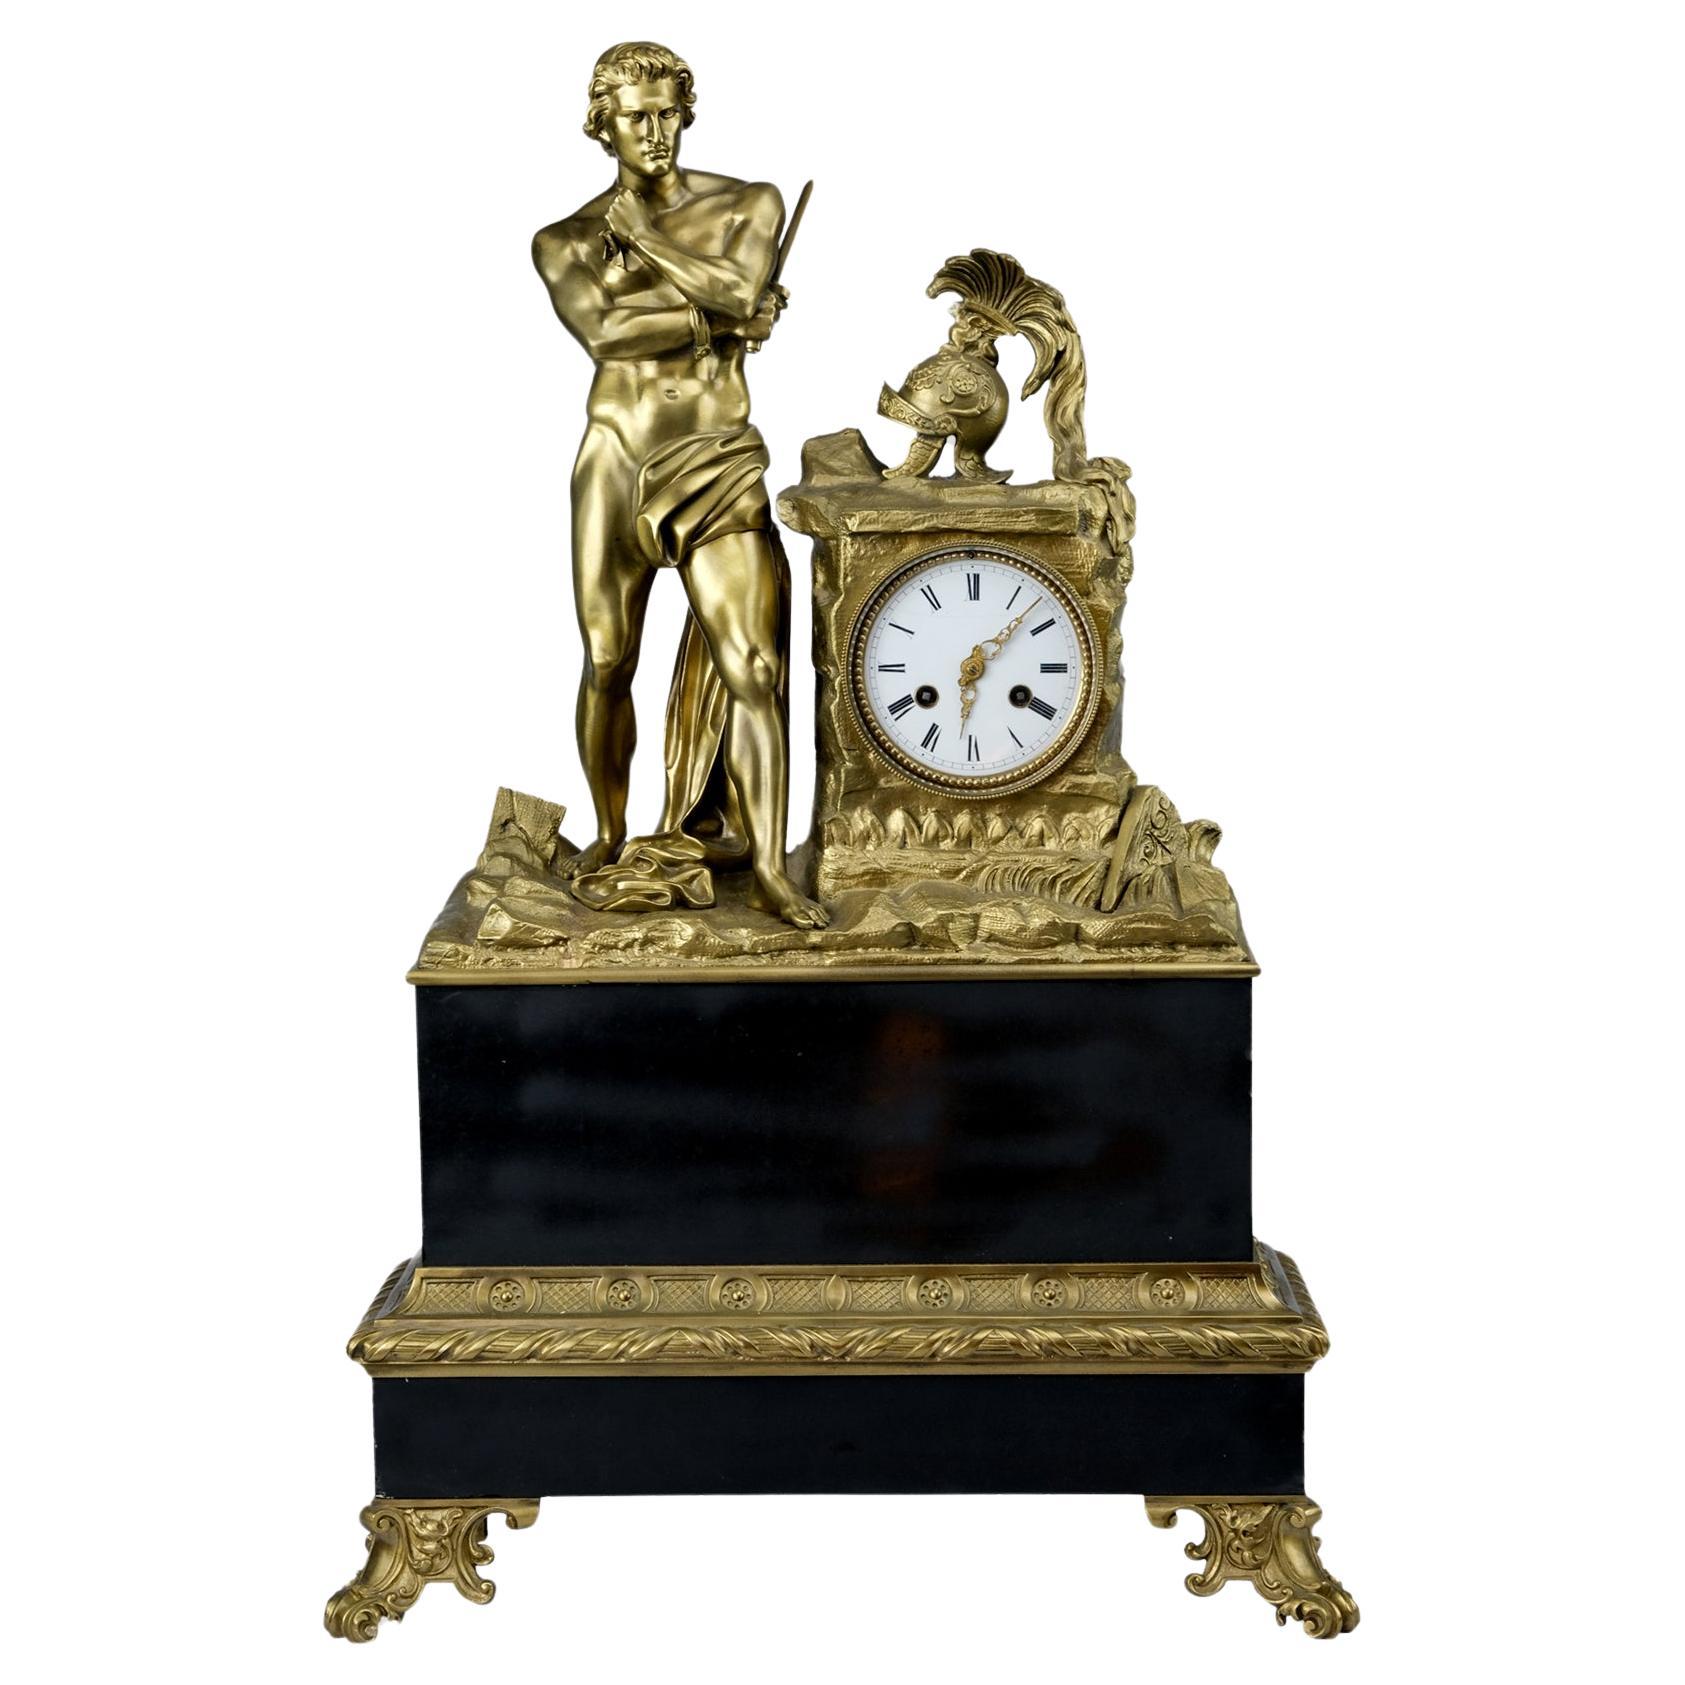 Monumental clock in gilded bronze representing Spartacus